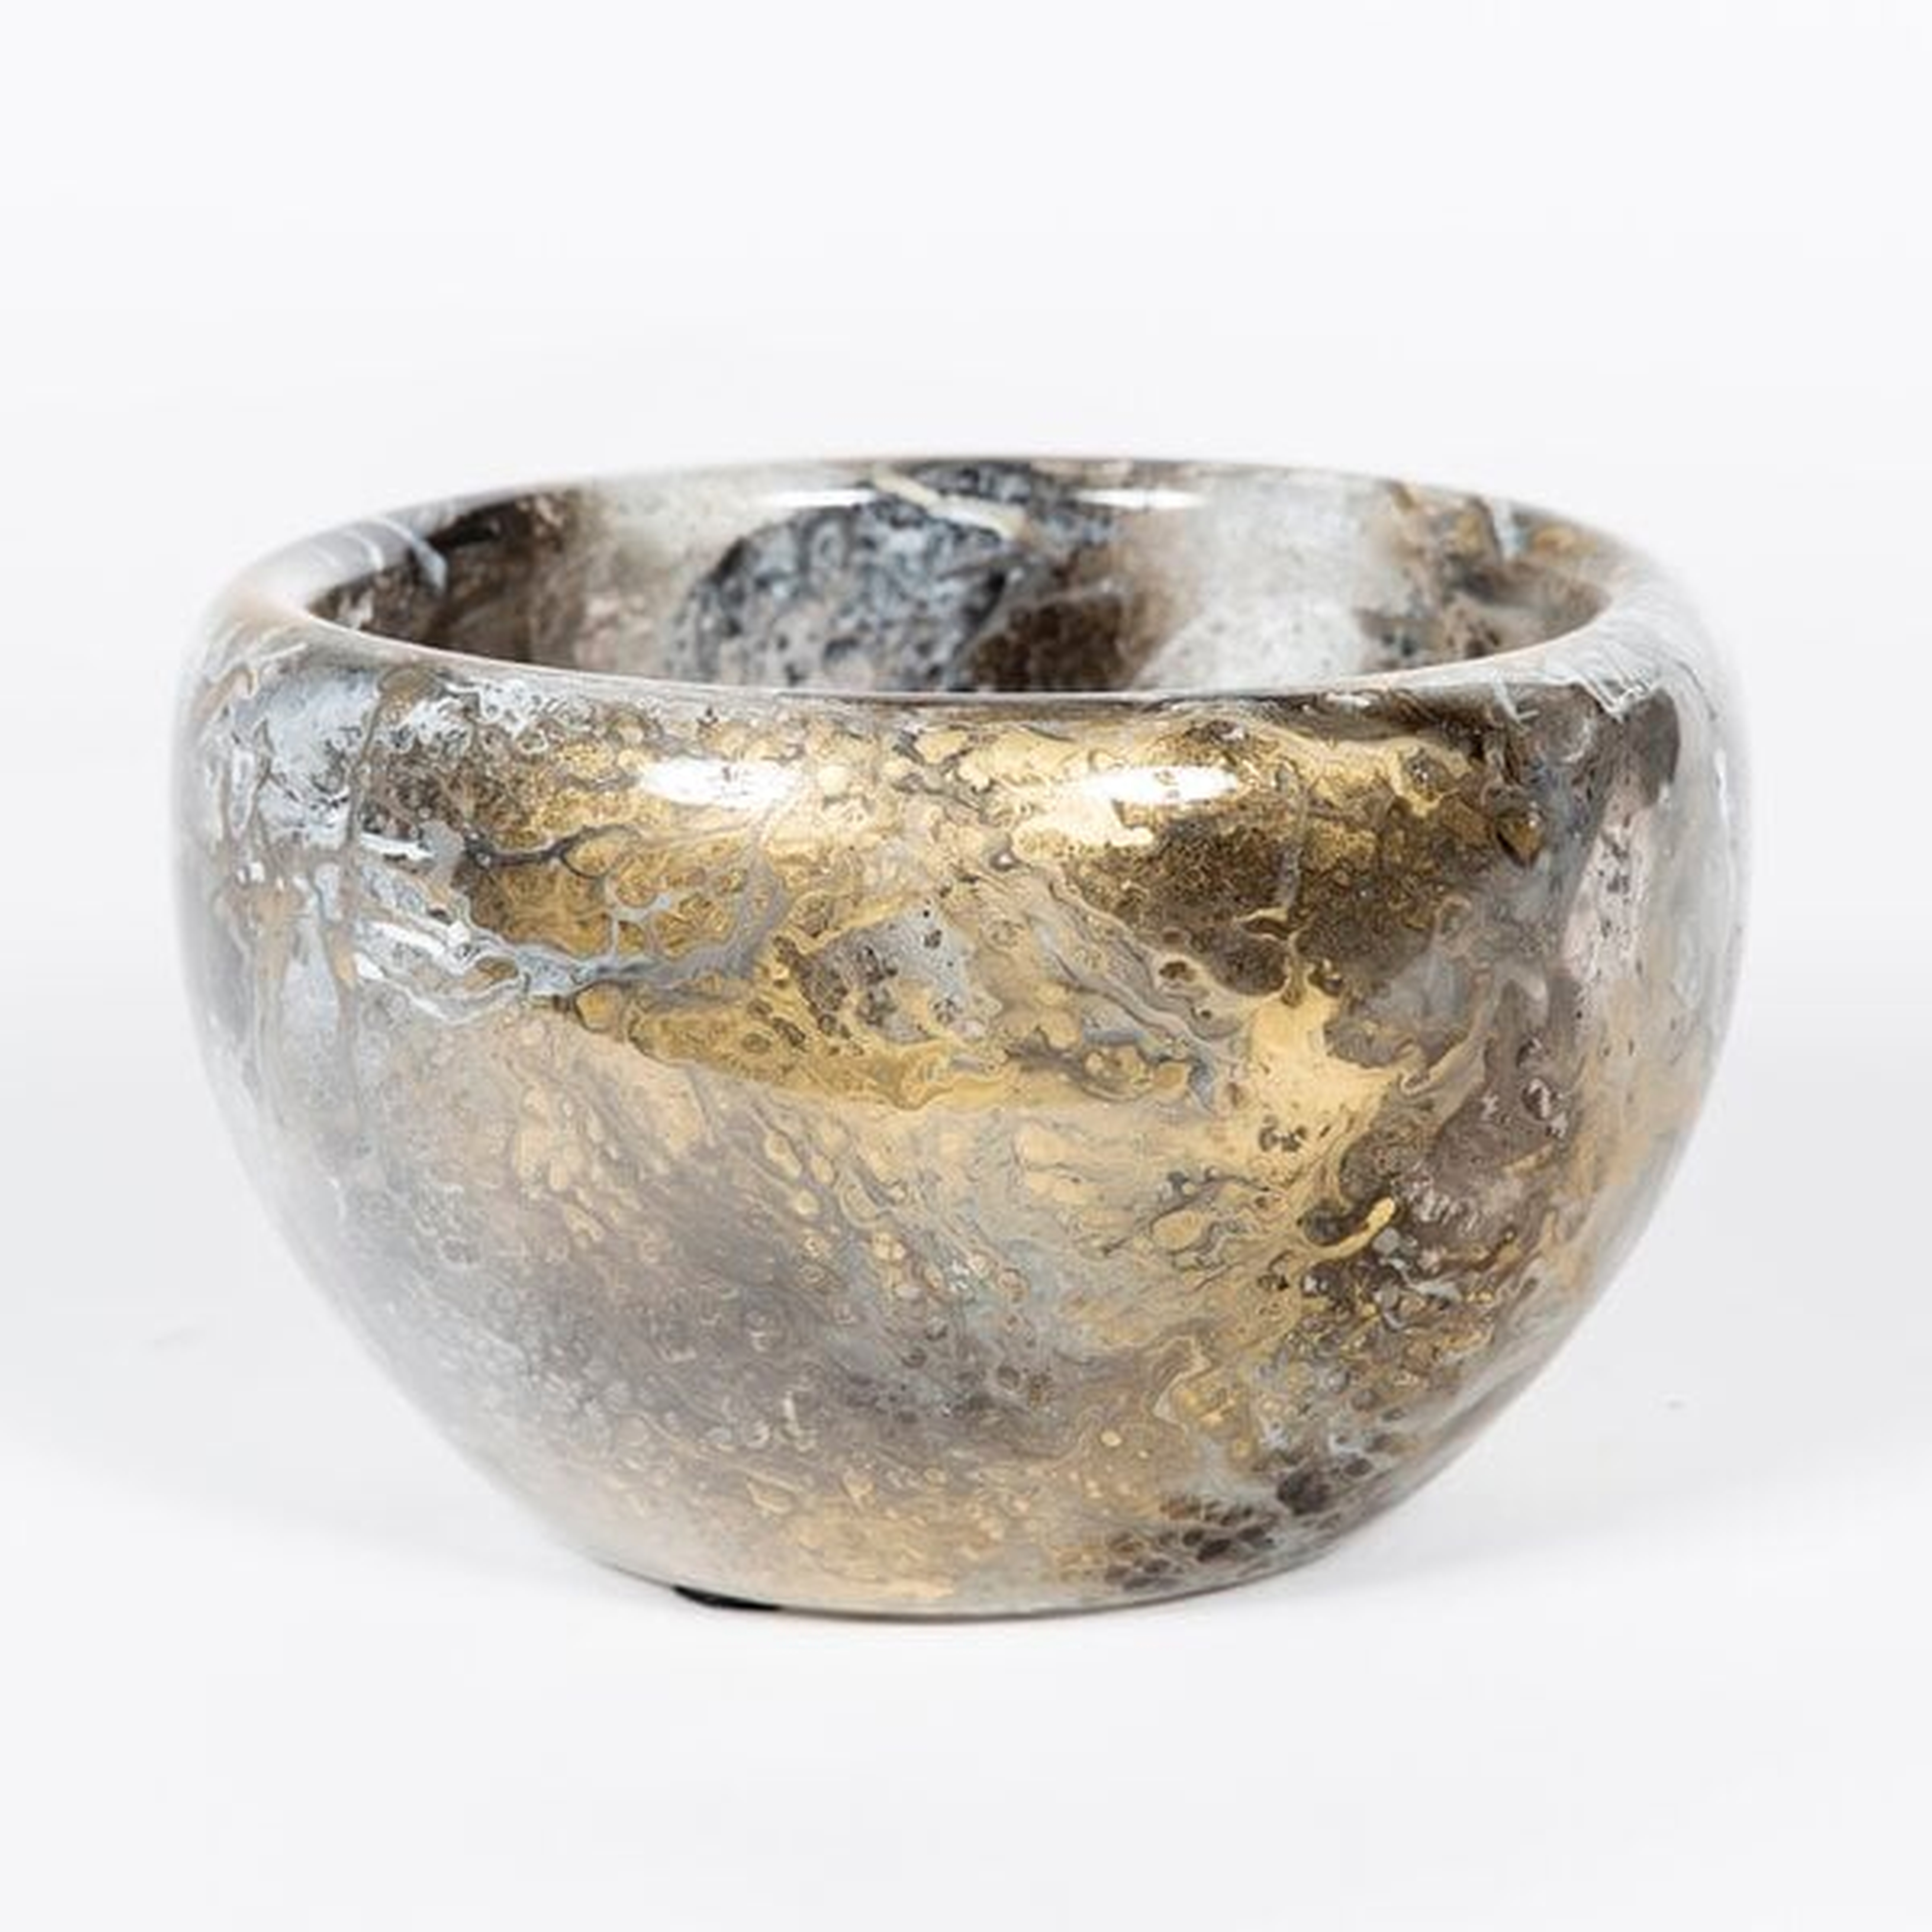 Prima Design Source Glass Decorative Bowl in Gold/Black/Brown - Perigold